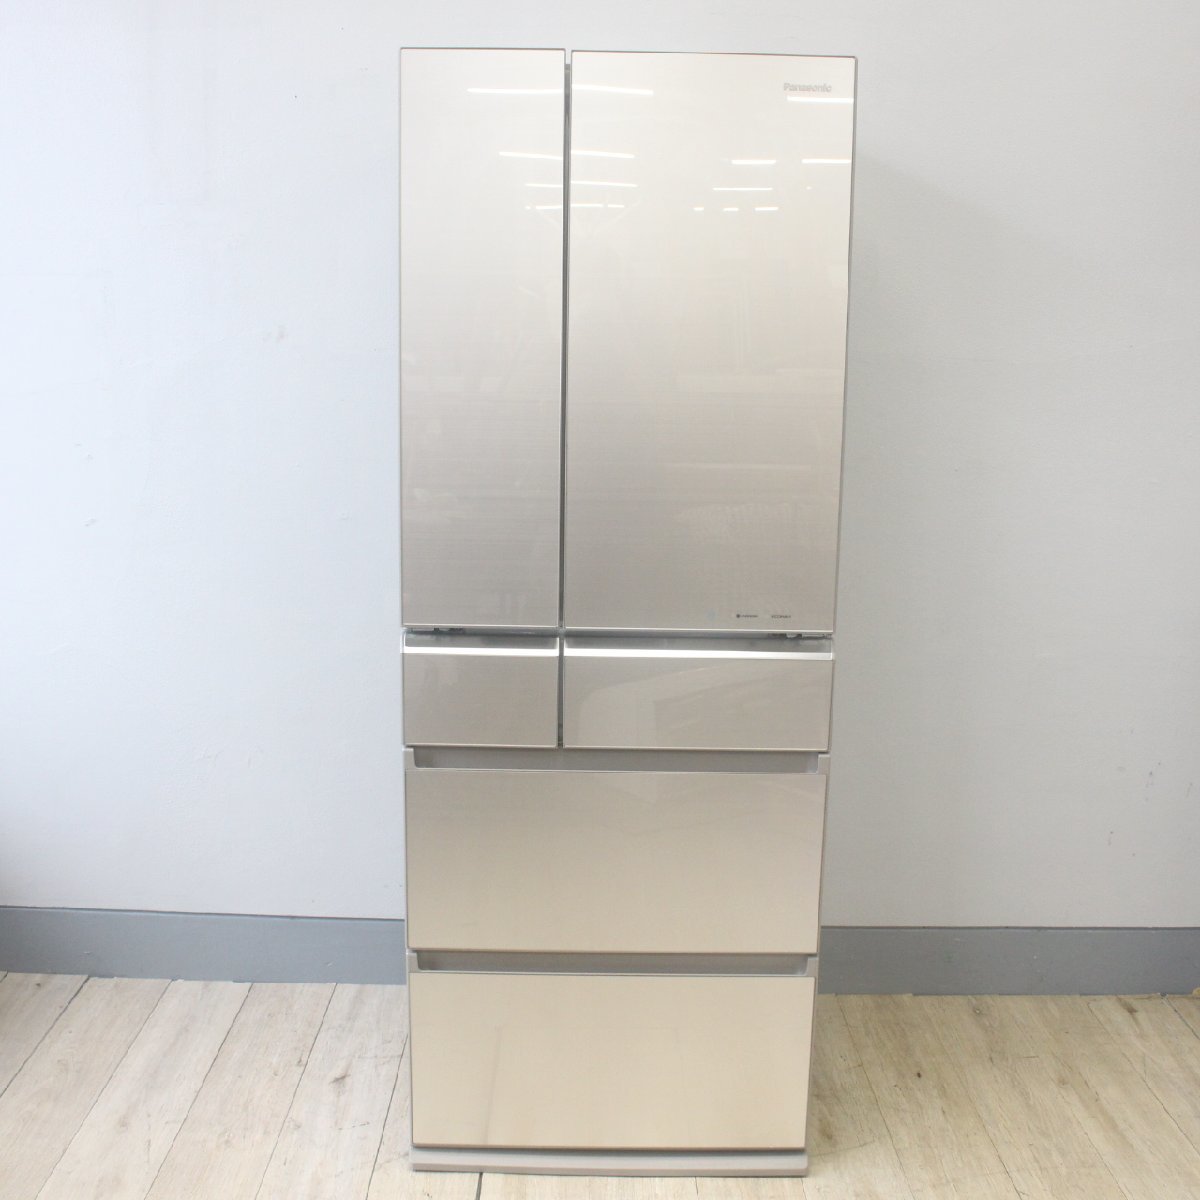 東京都大田区にて パナソニック  6ドア 冷蔵庫 NR-F518XG 2013年製 を出張買取させて頂きました。